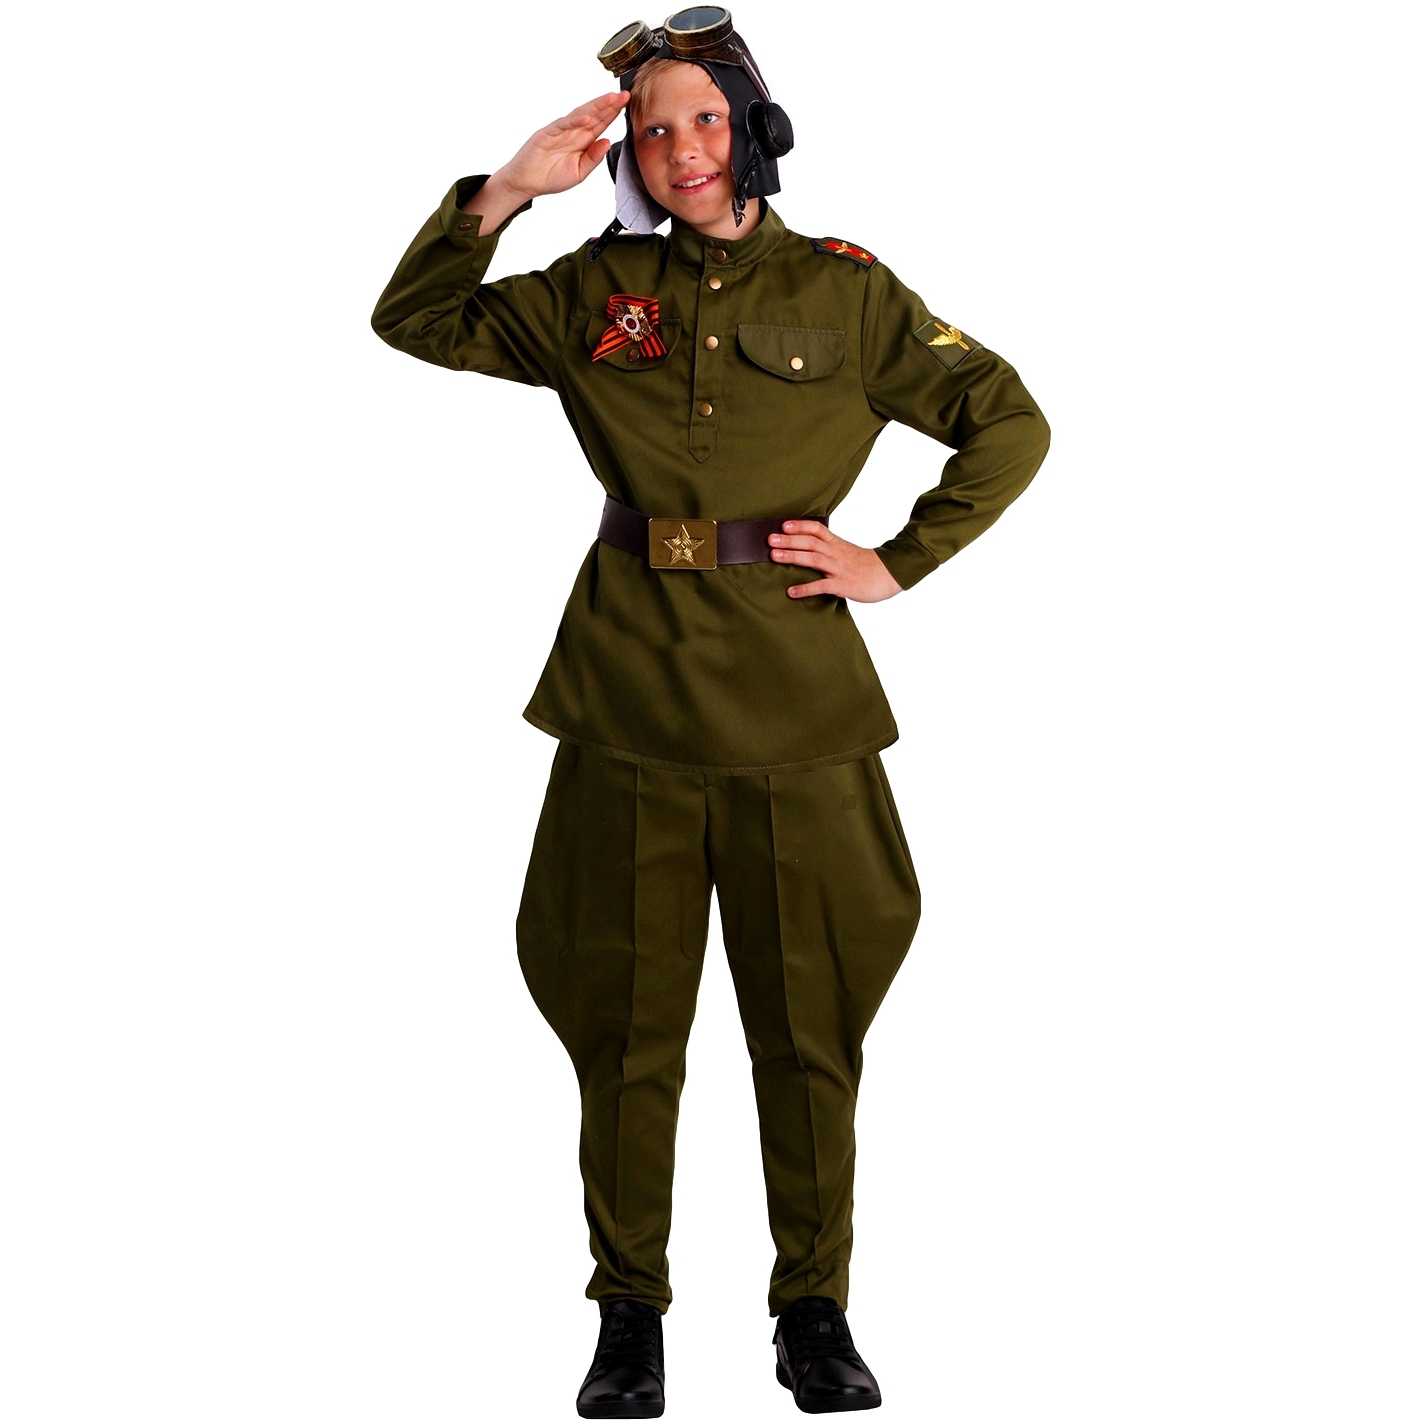 2076 к-19 костюм "военный летчик" (гимнастерка, ремень, брюки-галифе, шлем, очки, о 2076 к-19-30-116